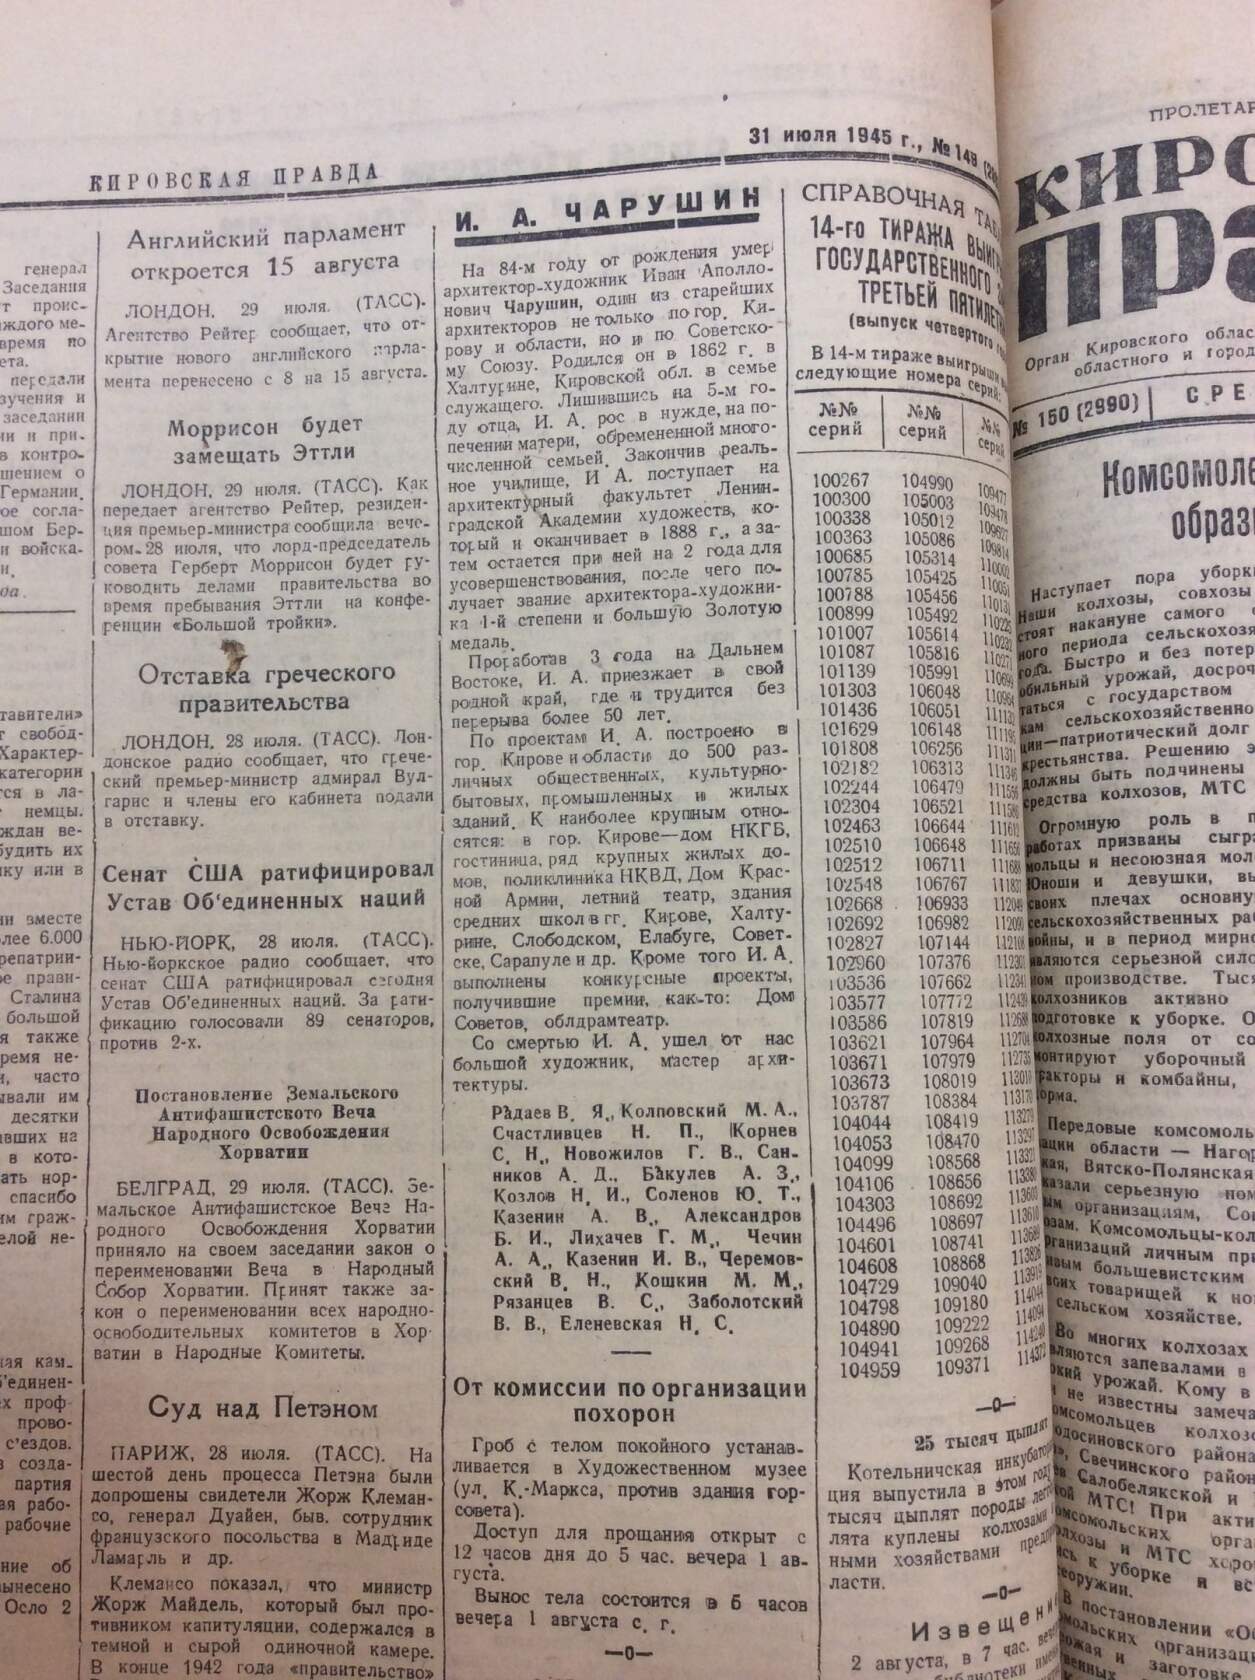 Кировская правда от 31 июля 1945 г. Статья о смерти Чурушина И.А.